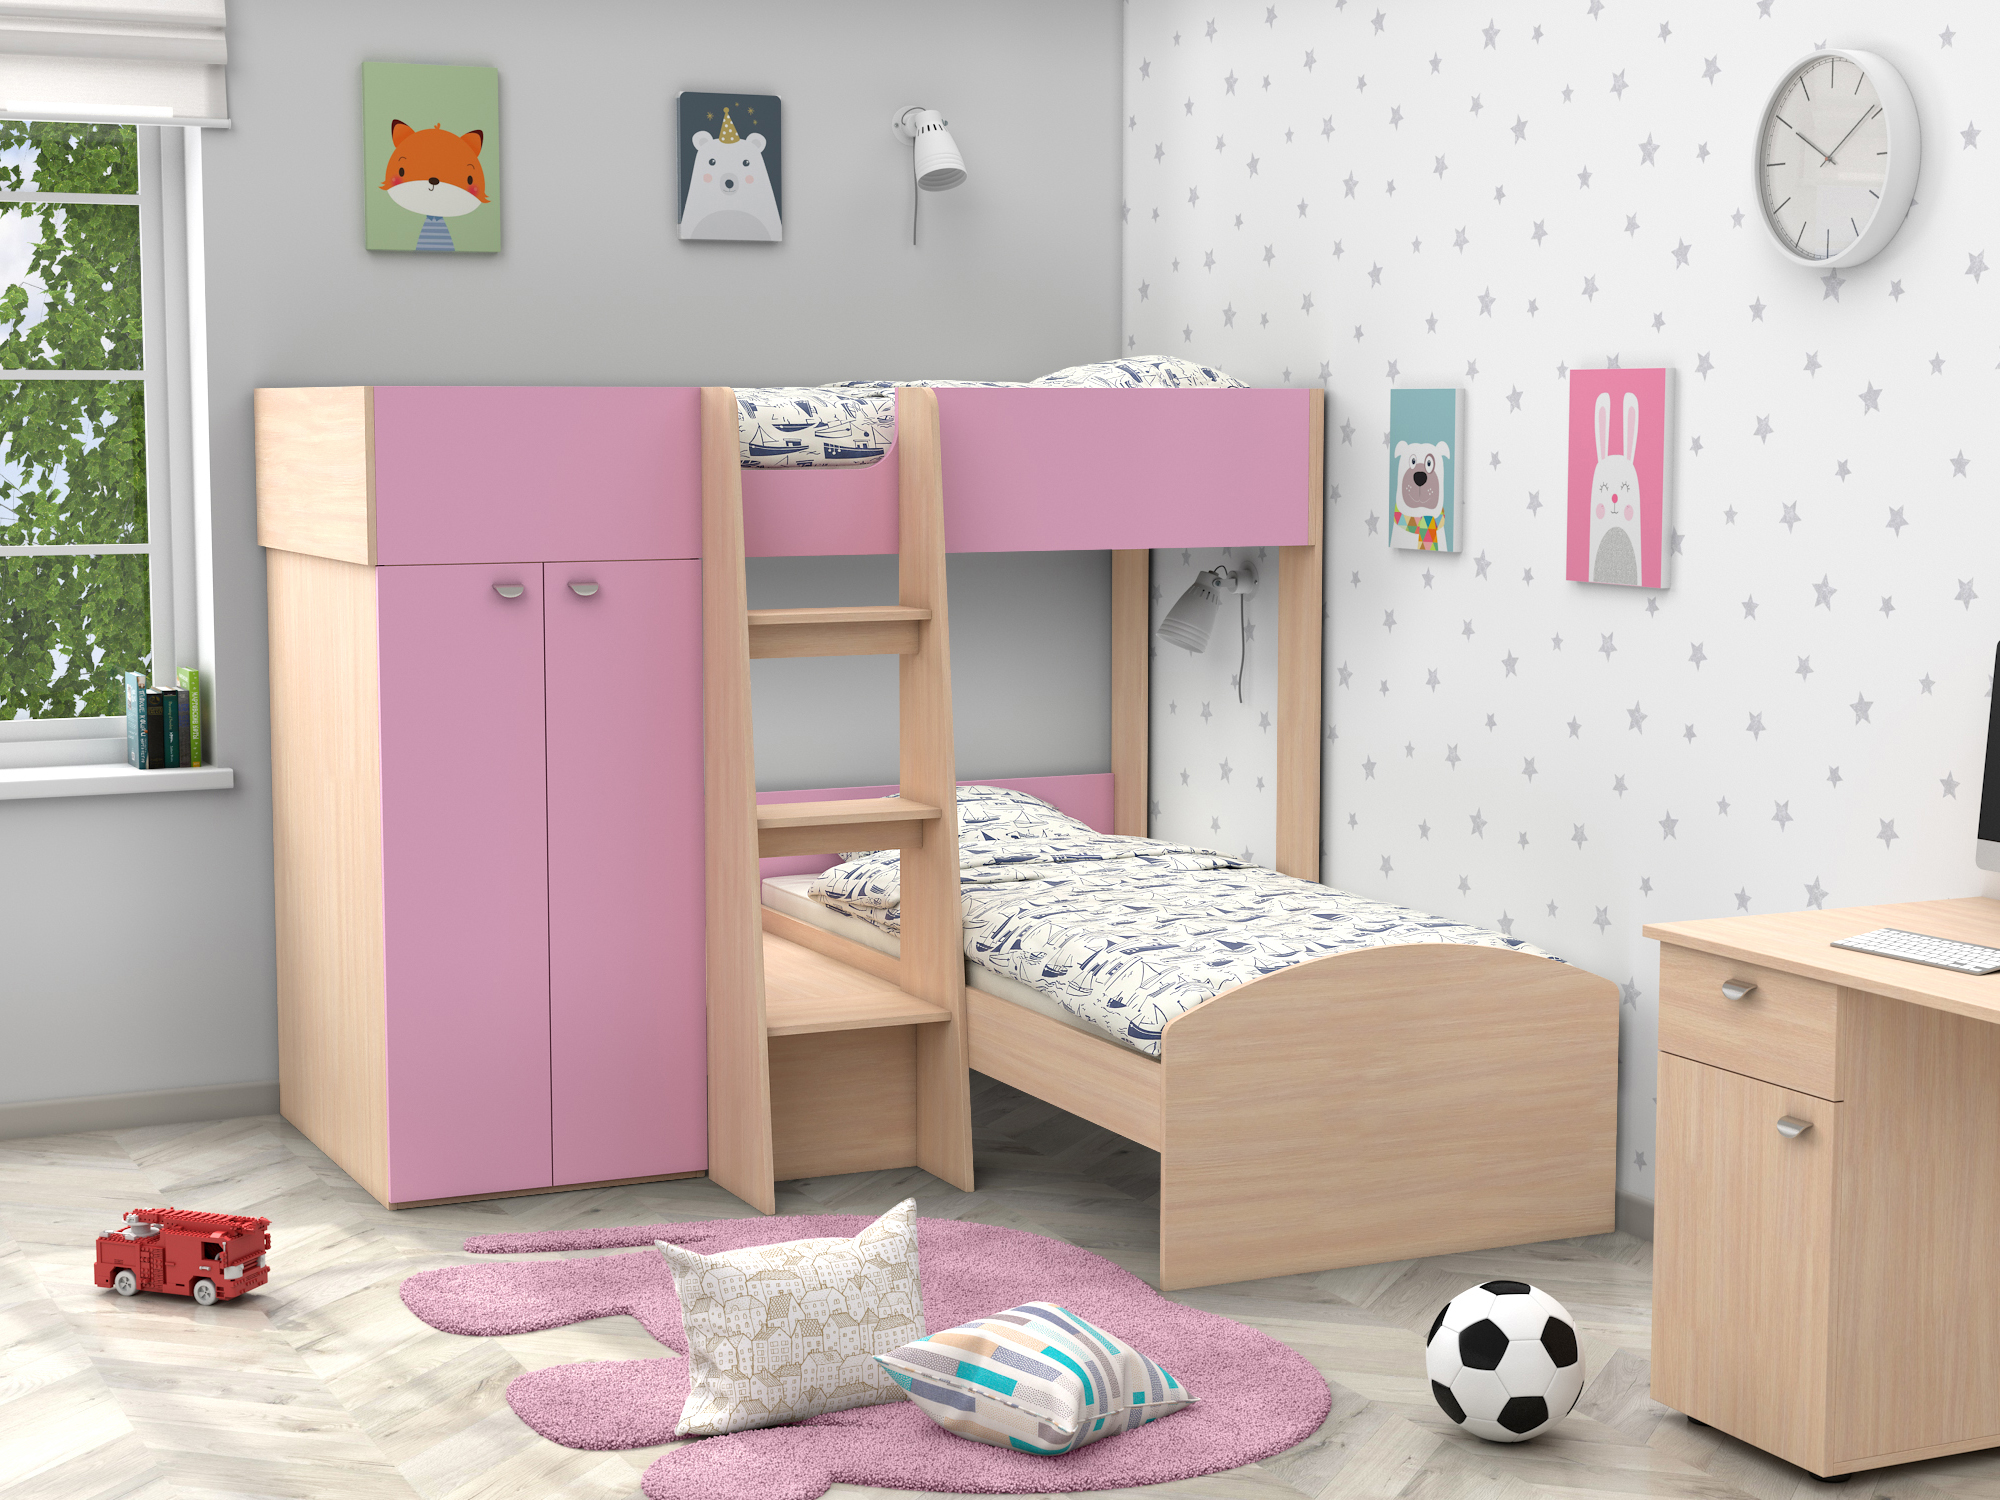 Двухъярусная кровать Golden Kids-4 (90х200) Розовый, Белый, Бежевый, ЛДСП двухъярусная кровать golden kids 4 90х200 венге коричневый темный бежевый лдсп